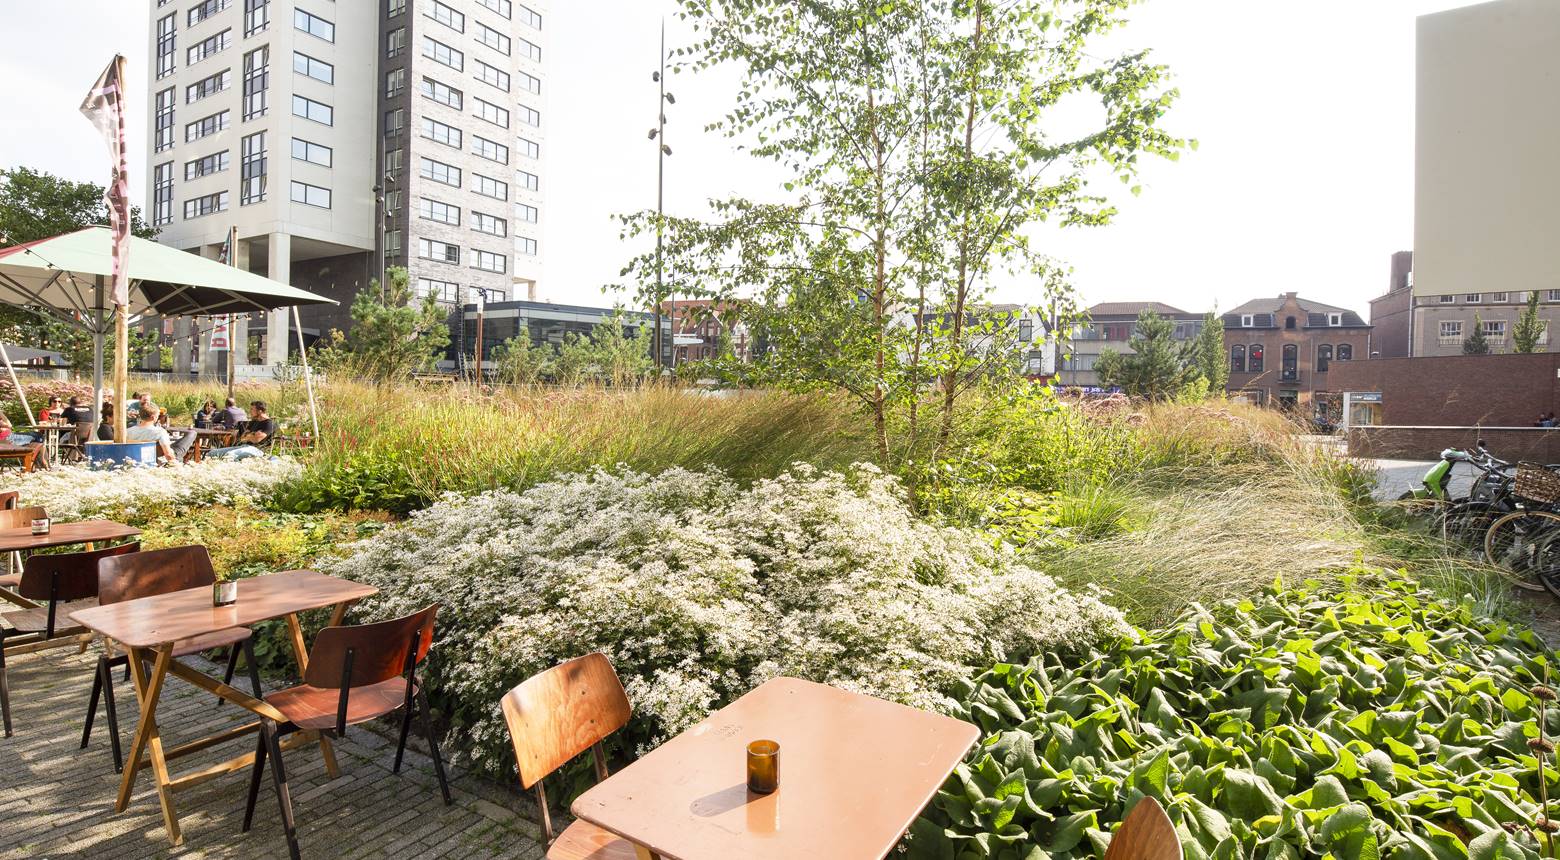 Project Clausplein - Donker Design - Van een vrijwel volledig versteend plein naar een groene, duurzame plek waar je wil verblijven